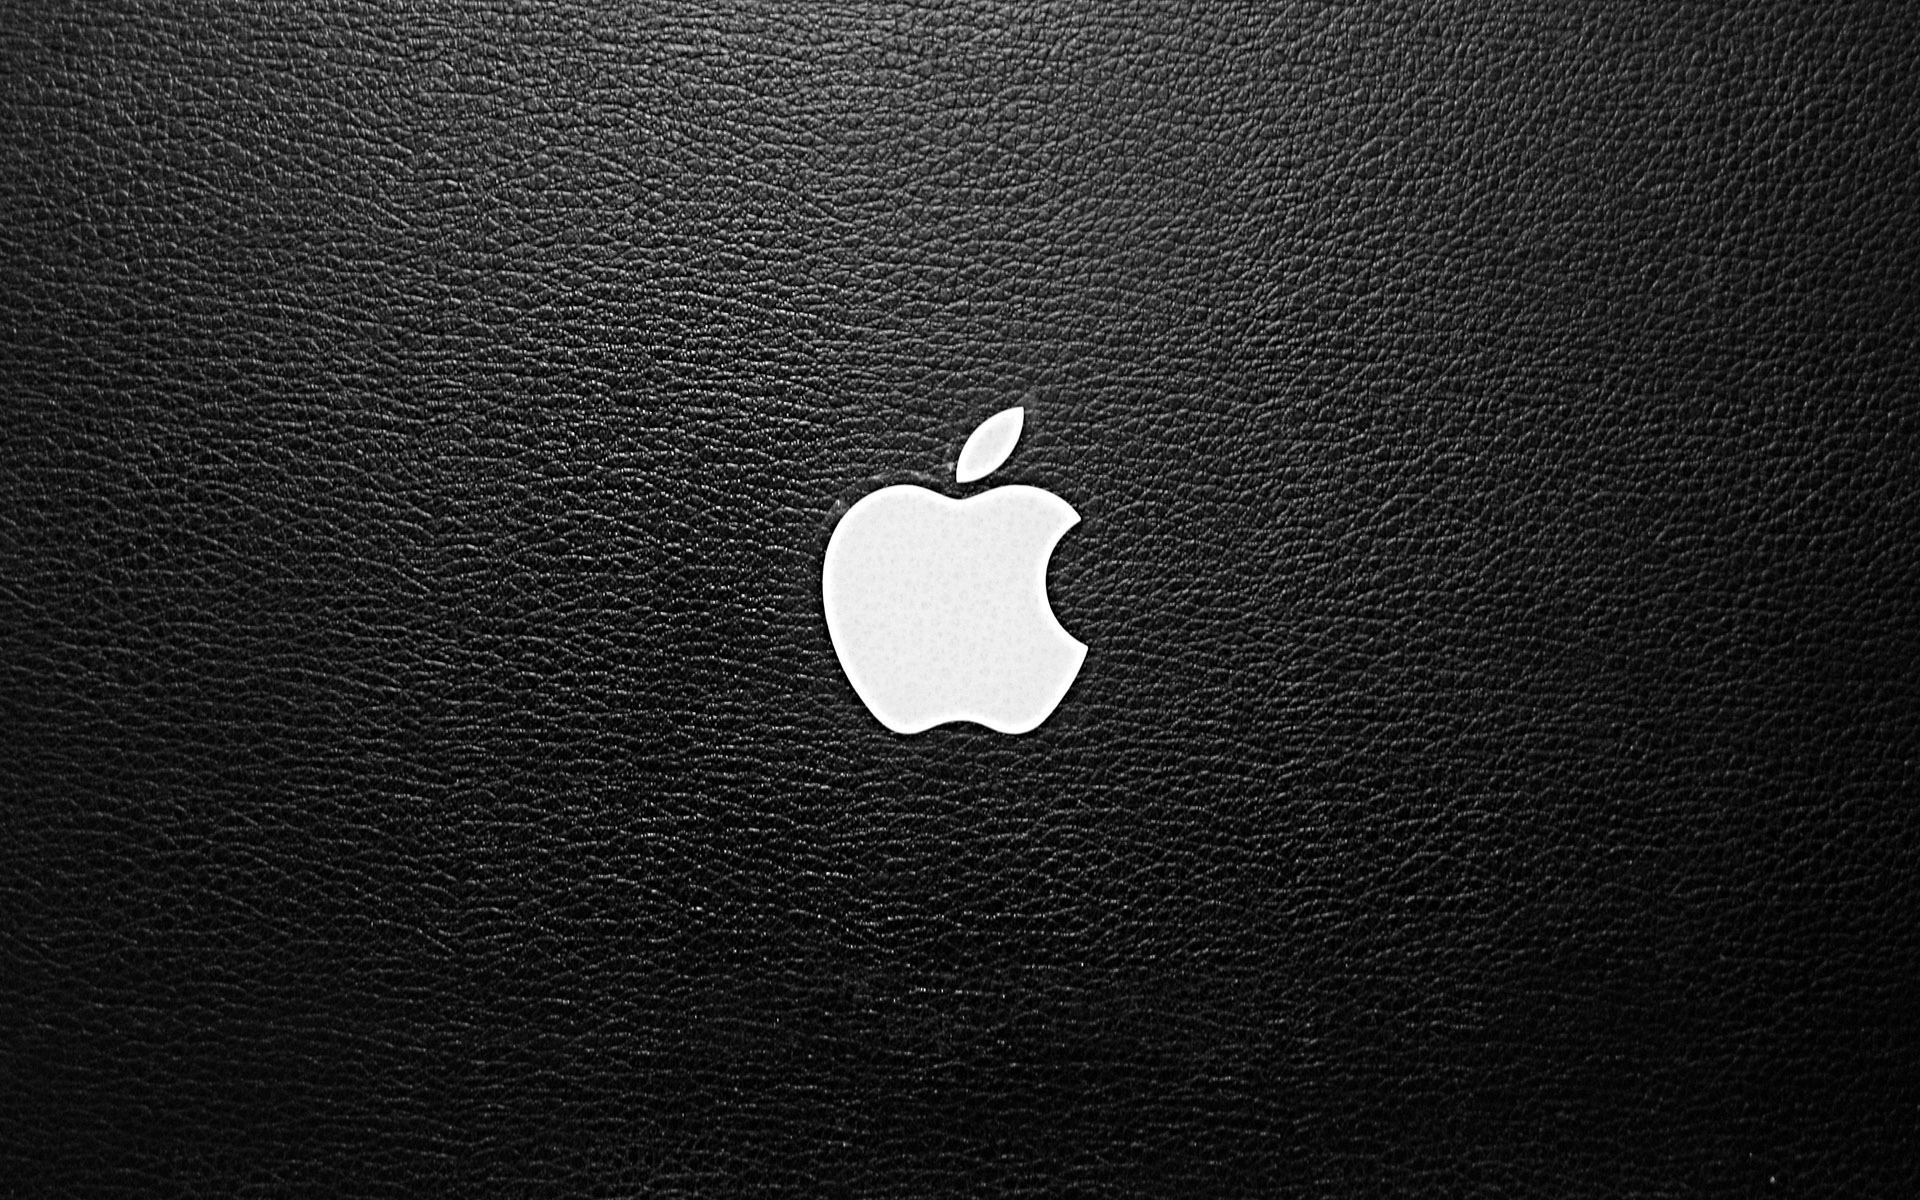 Với những ai yêu thích MacBook Air, hình nền có logo đầy ấn tượng sẽ khiến bạn cảm thấy phấn khích và tự hào. Hãy xem hình nền này và trang trí cho máy tính của bạn trở nên đặc biệt hơn.